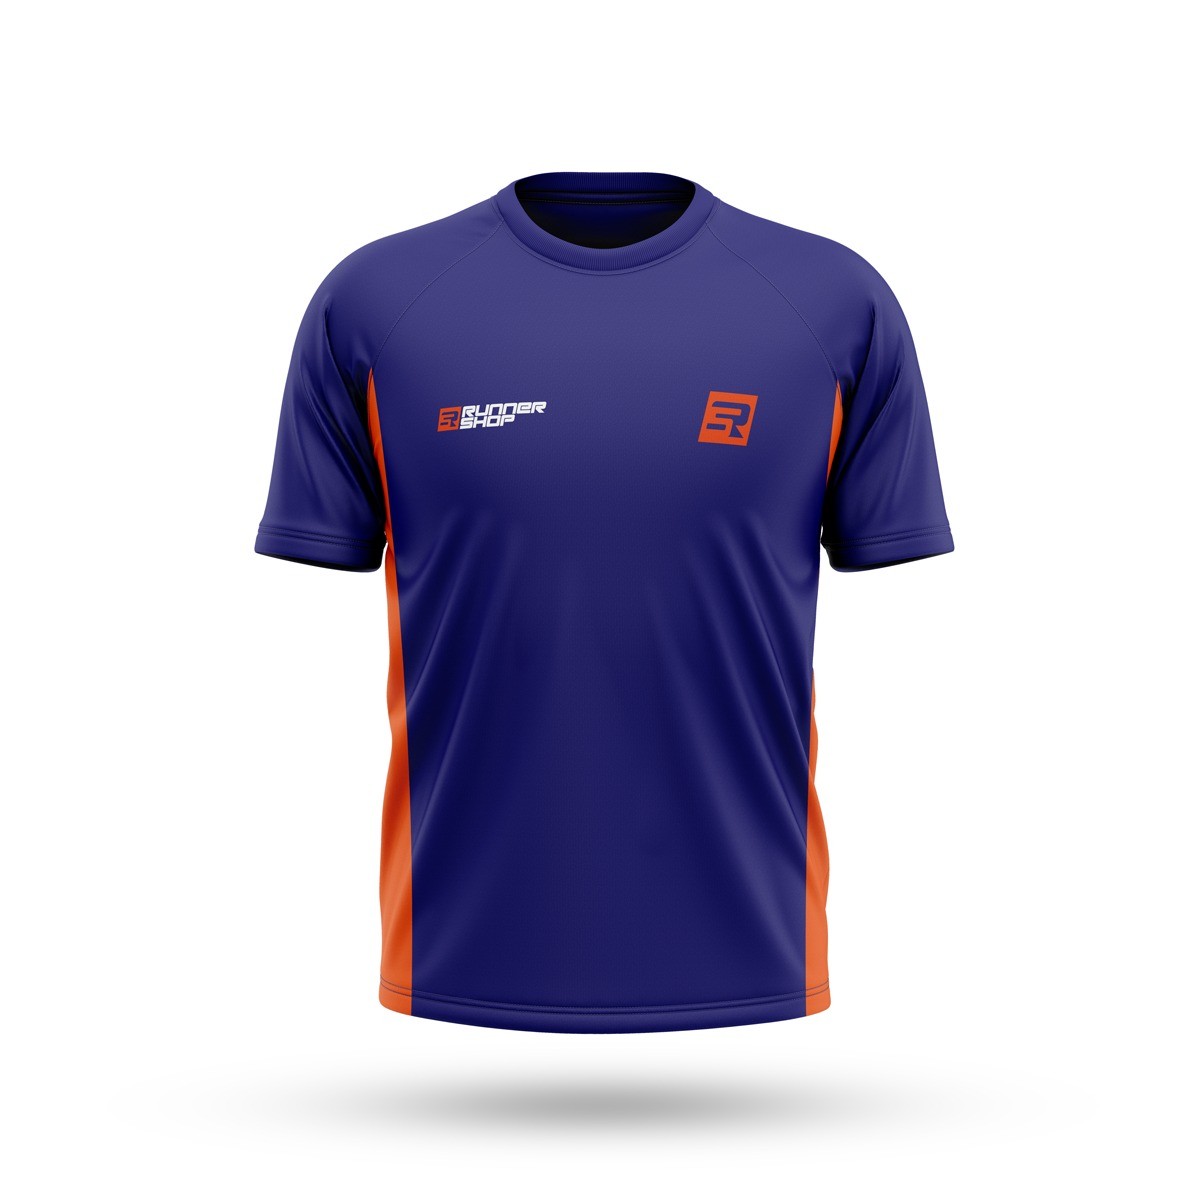 Runner Shop Team - Camiseta Unissex + Meia PRO - Foto 1